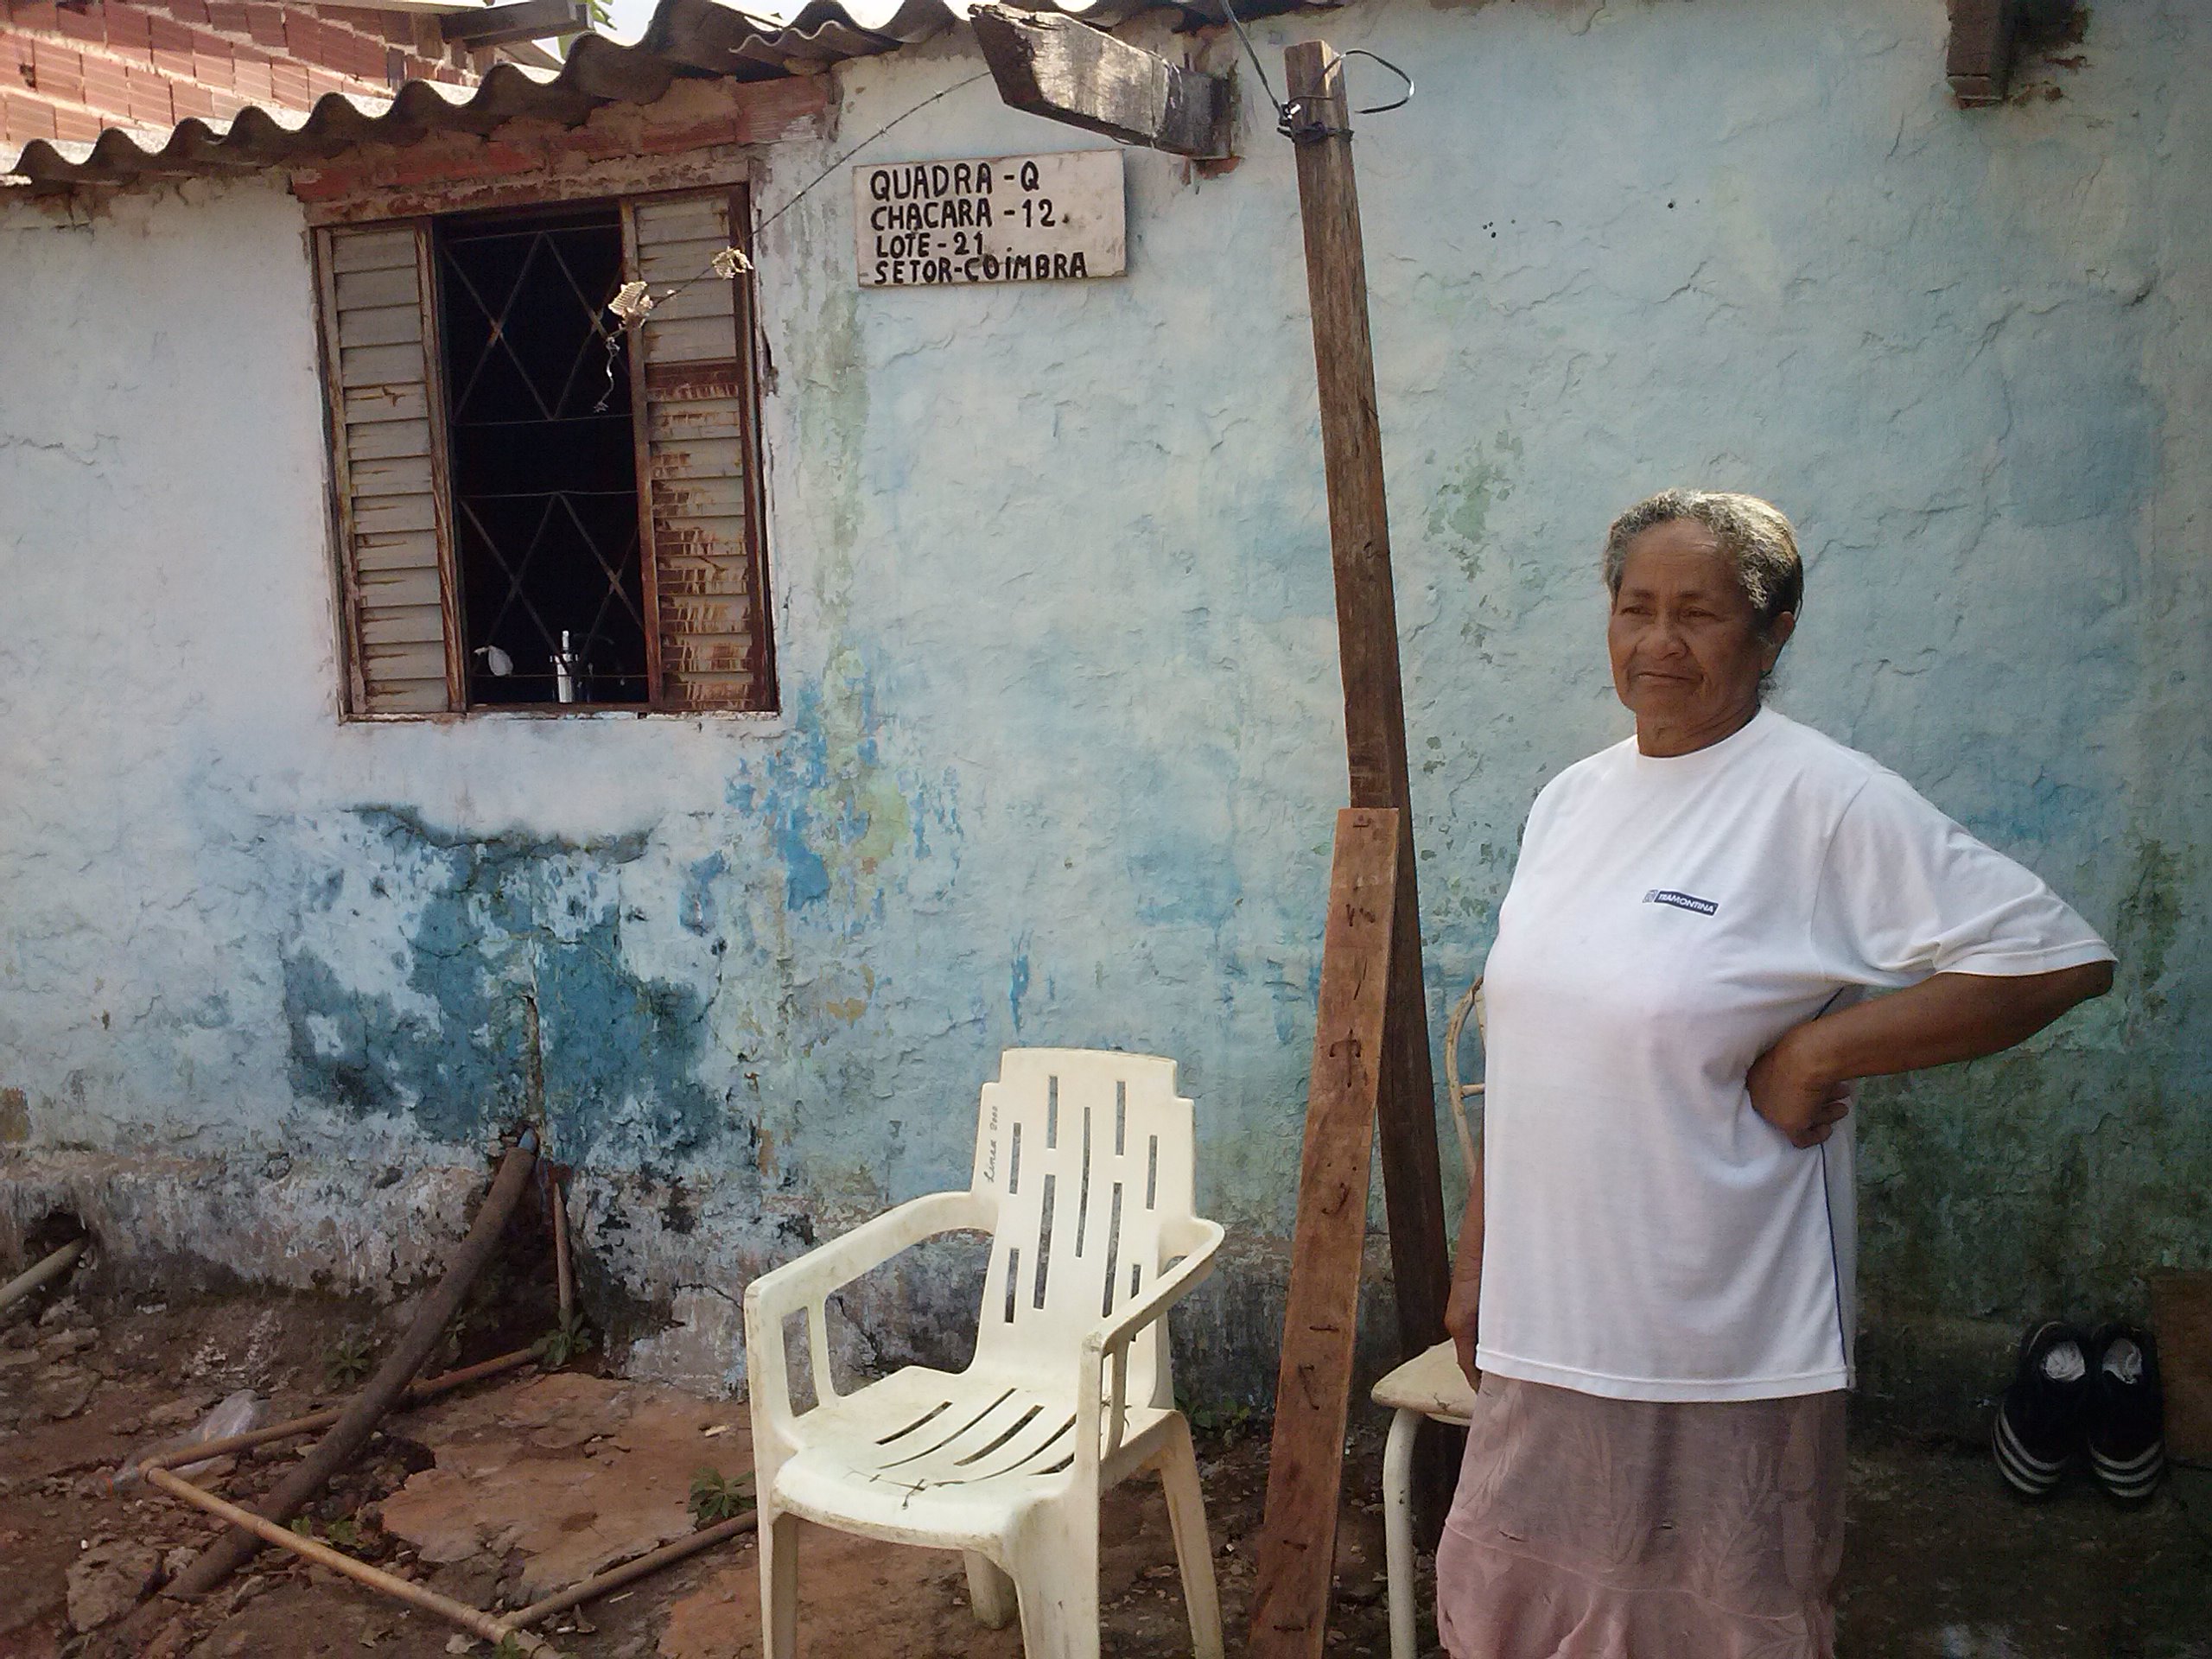 Agehab garante reforma de 122 moradias em Águas Lindas